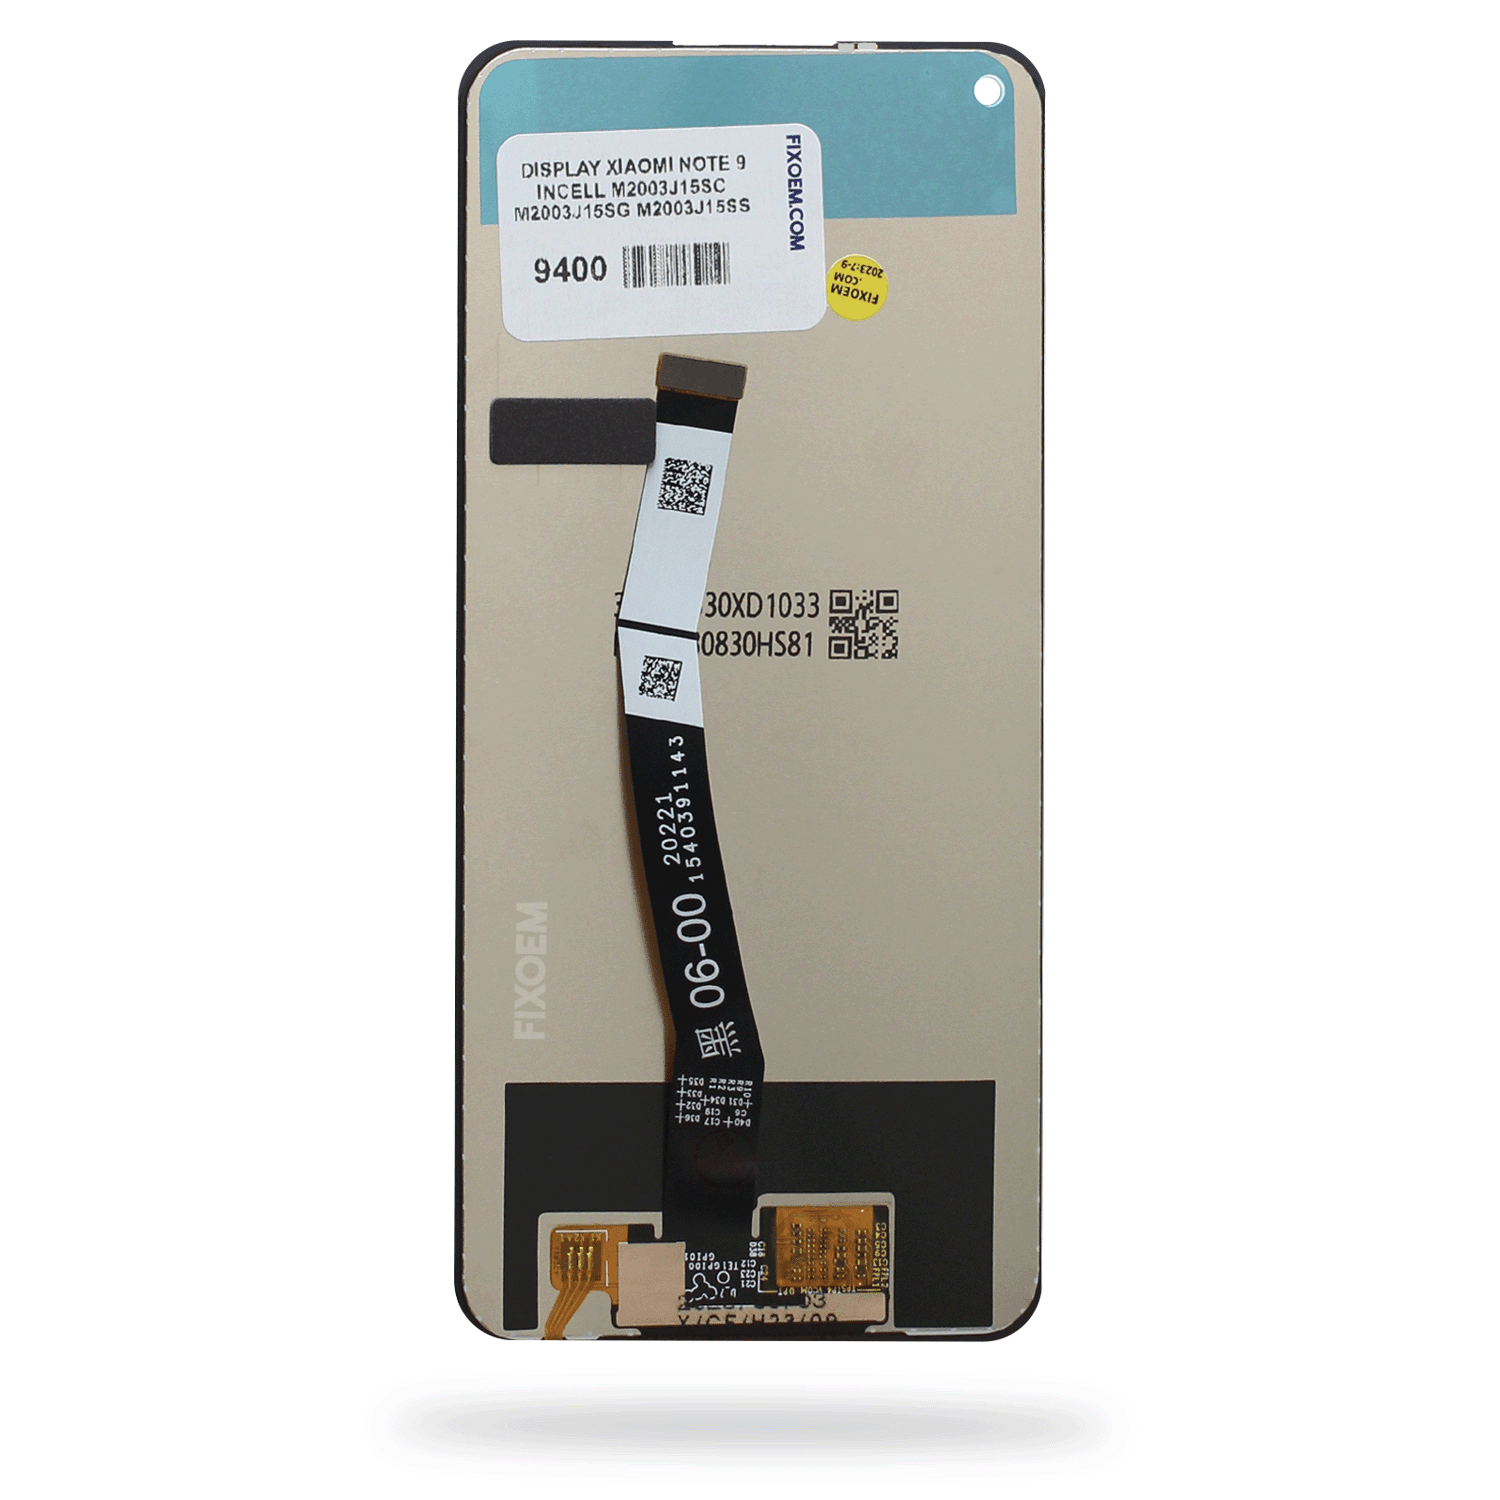 Display Xiaomi Redmi Note 9 Ips M2003J15SC M2003J15SG M2003J15SS a solo $ 250.00 Refaccion y puestos celulares, refurbish y microelectronica.- FixOEM